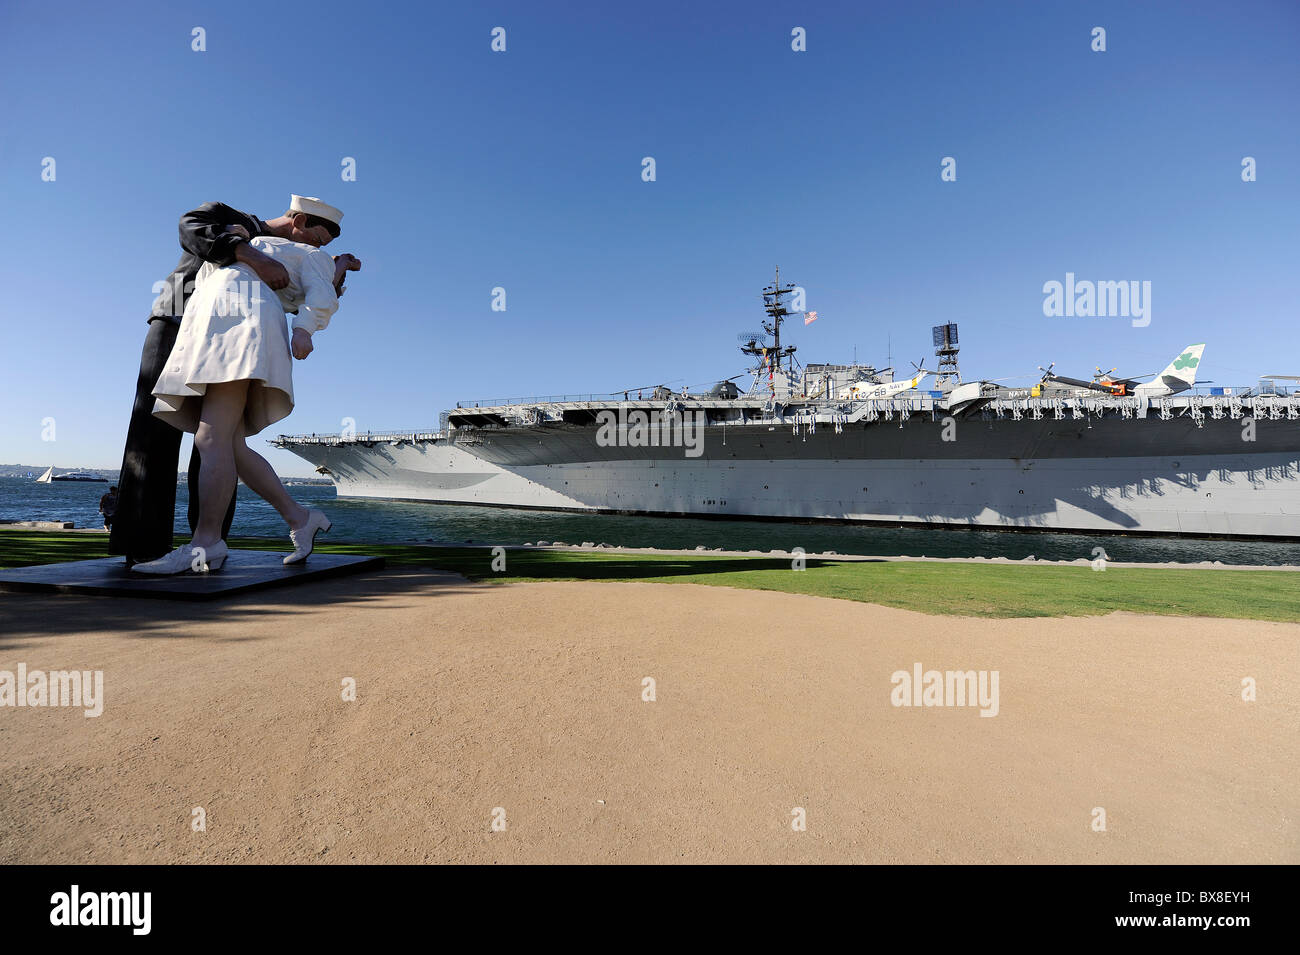 La estatua del beso marinero besando a una mujer después de la guerra en el portaaviones USS Midway Museum en San Diego, California Foto de stock